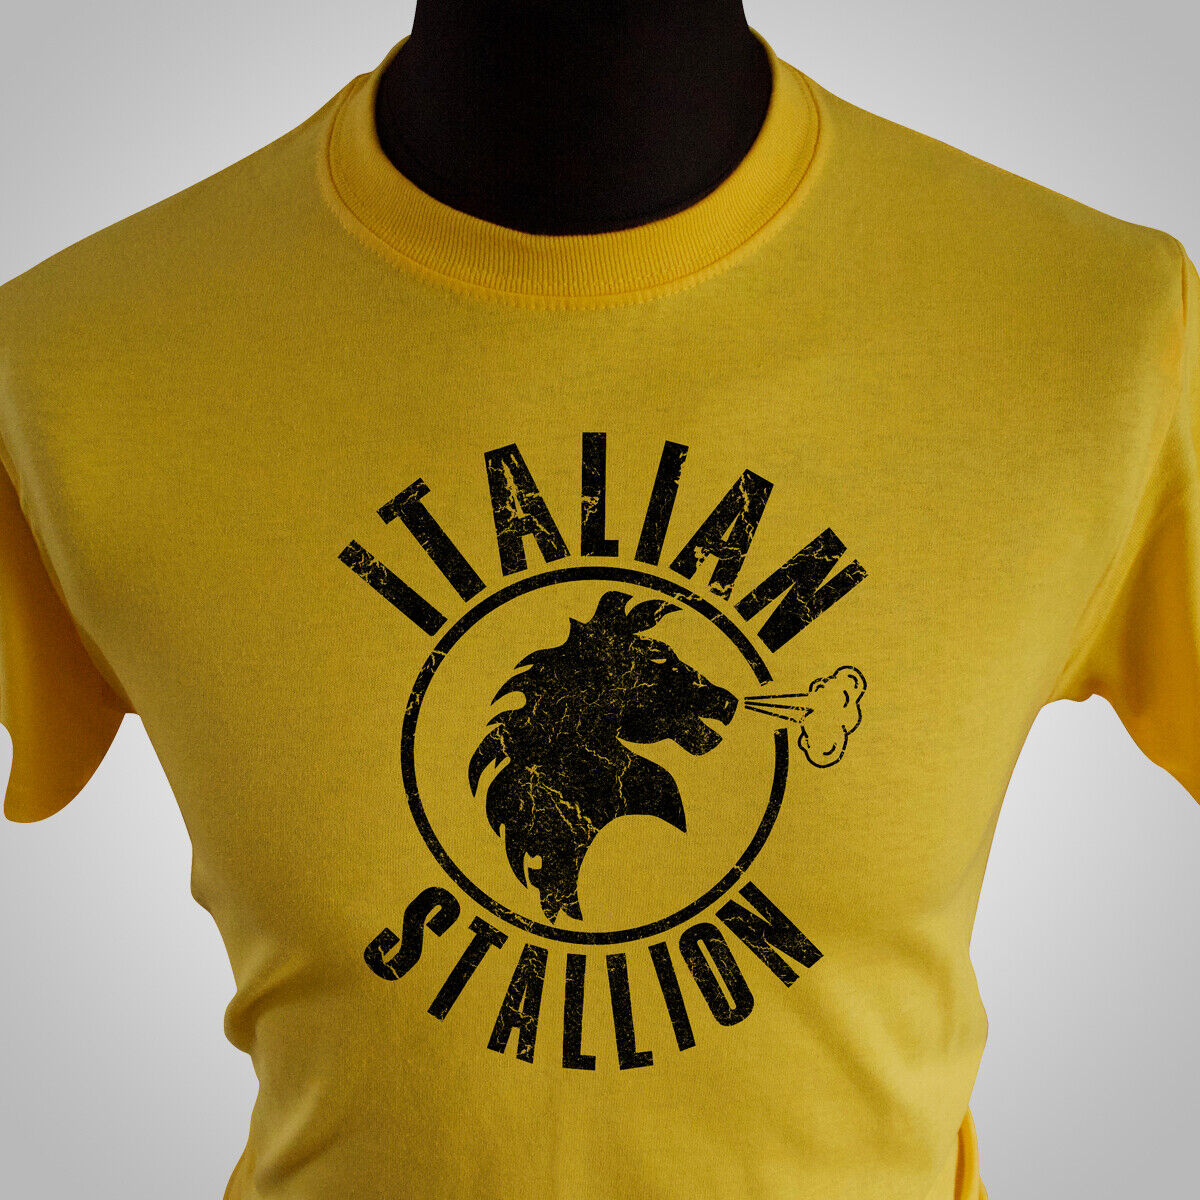 Italian Stallion Rocky Balboa Retro Movie T Shirt Boxing 80's Rocky III